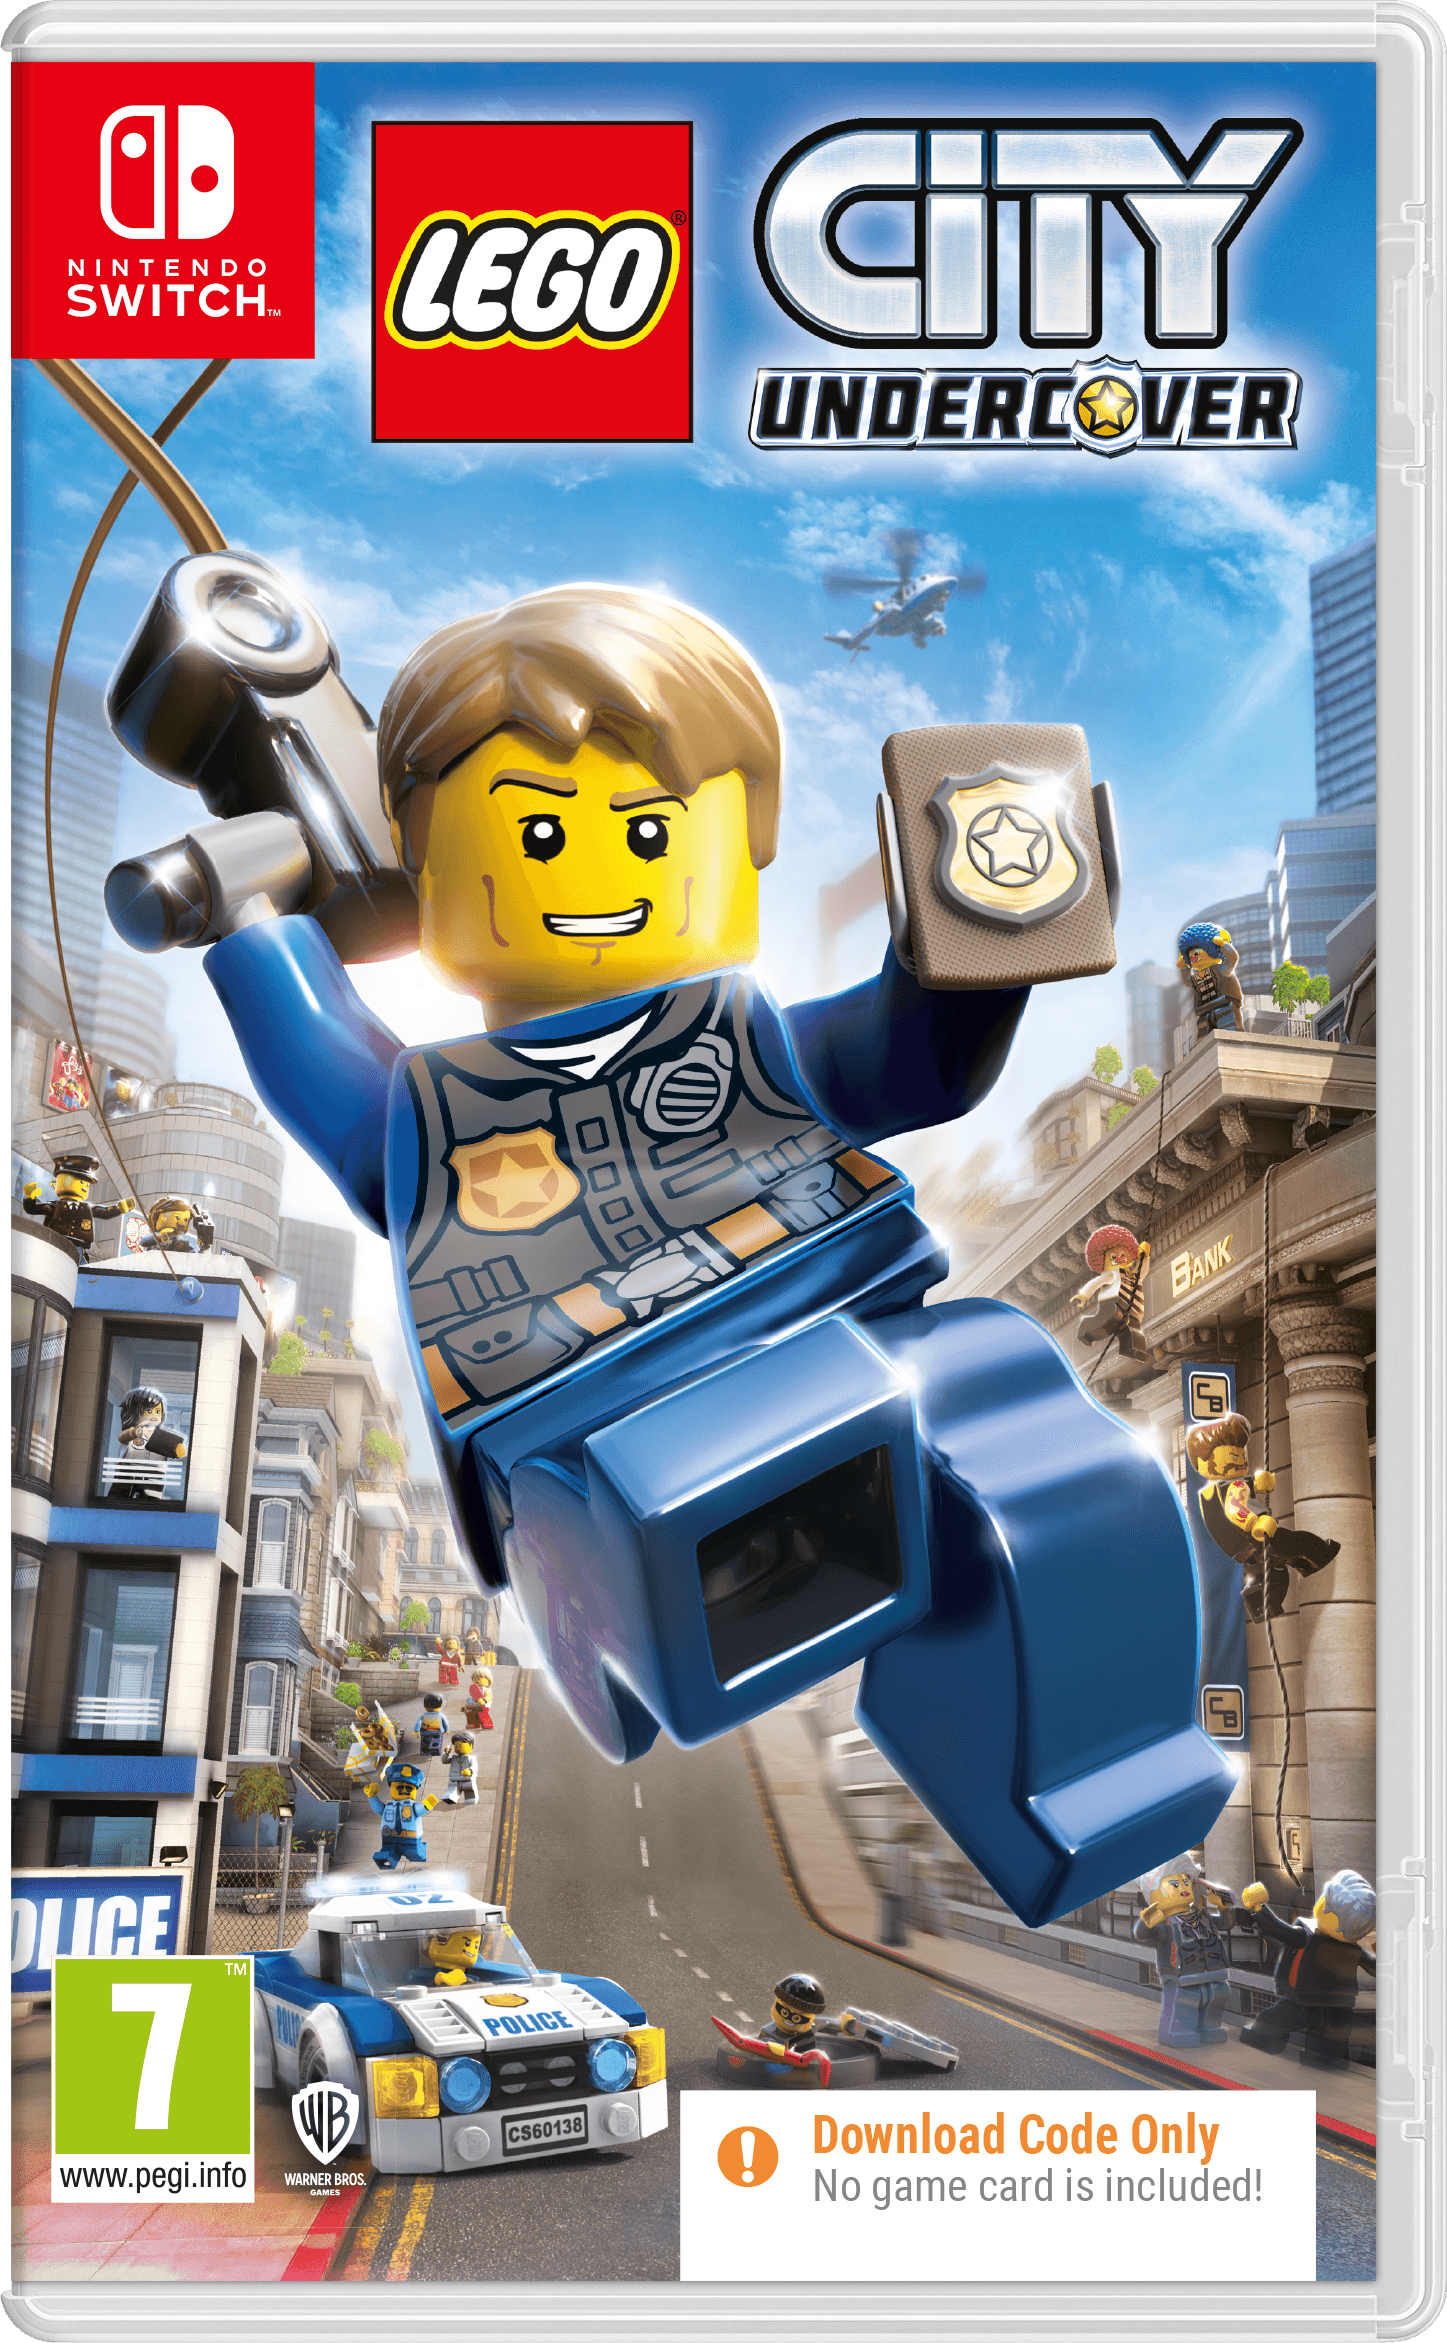 Lego City Undercover Cib - Want a New Gadget